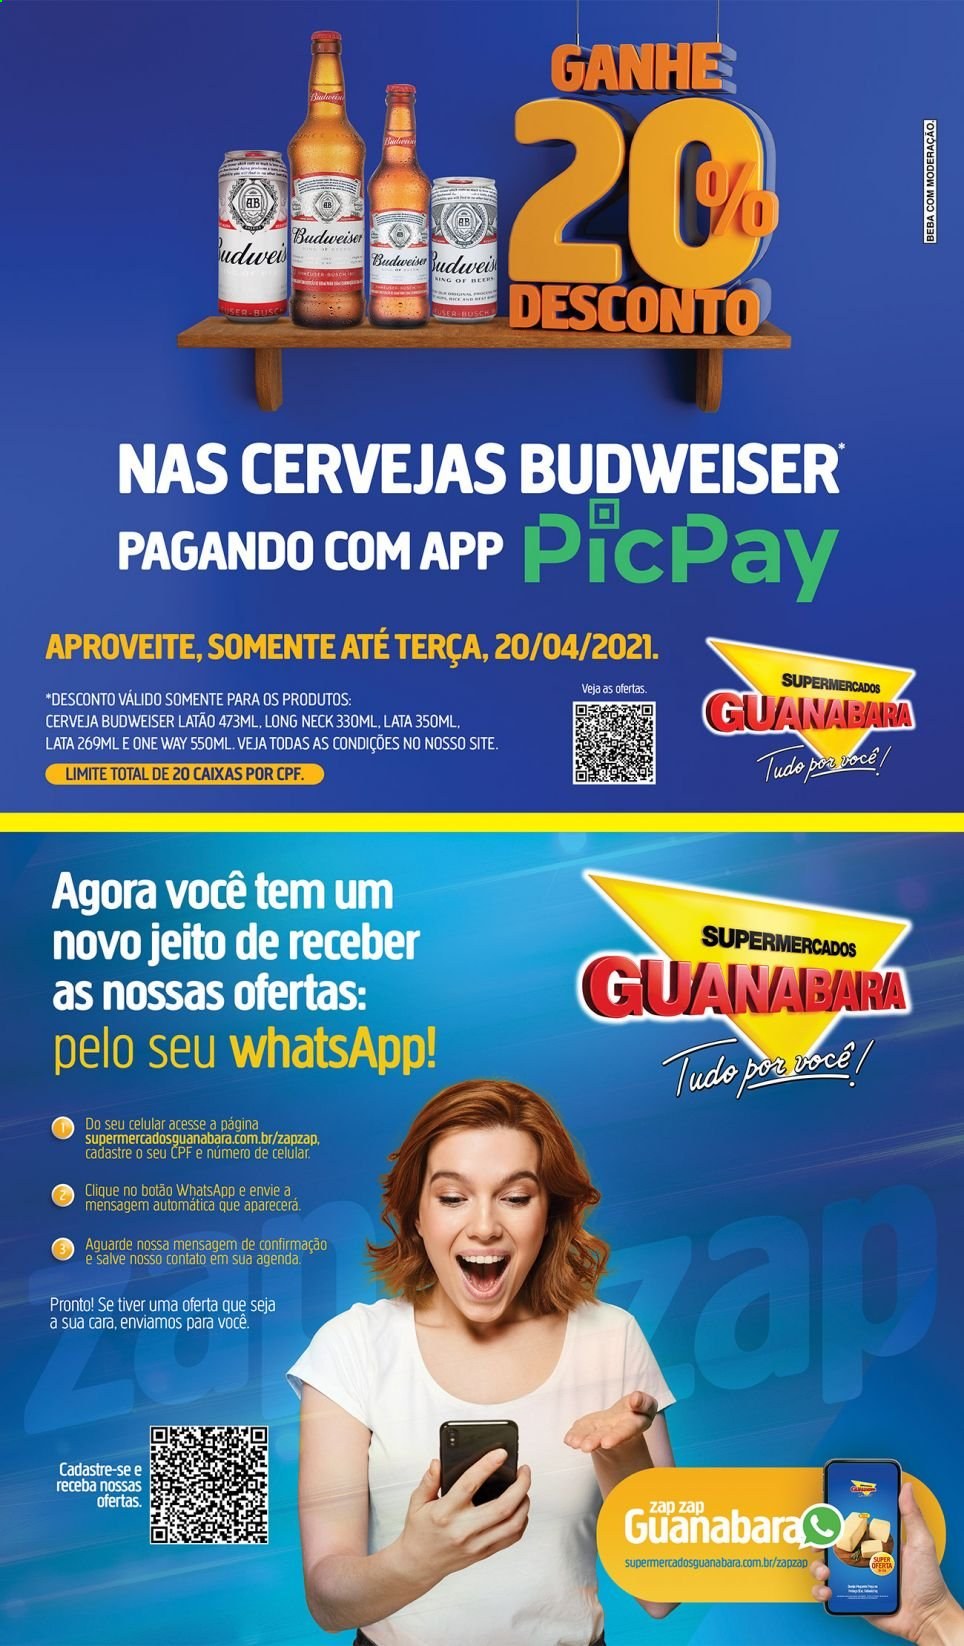 thumbnail - Folheto Supermercados Guanabara - 18/04/2021 - 20/04/2021 - Produtos em promoção - One Way, Budweiser. Página 12.